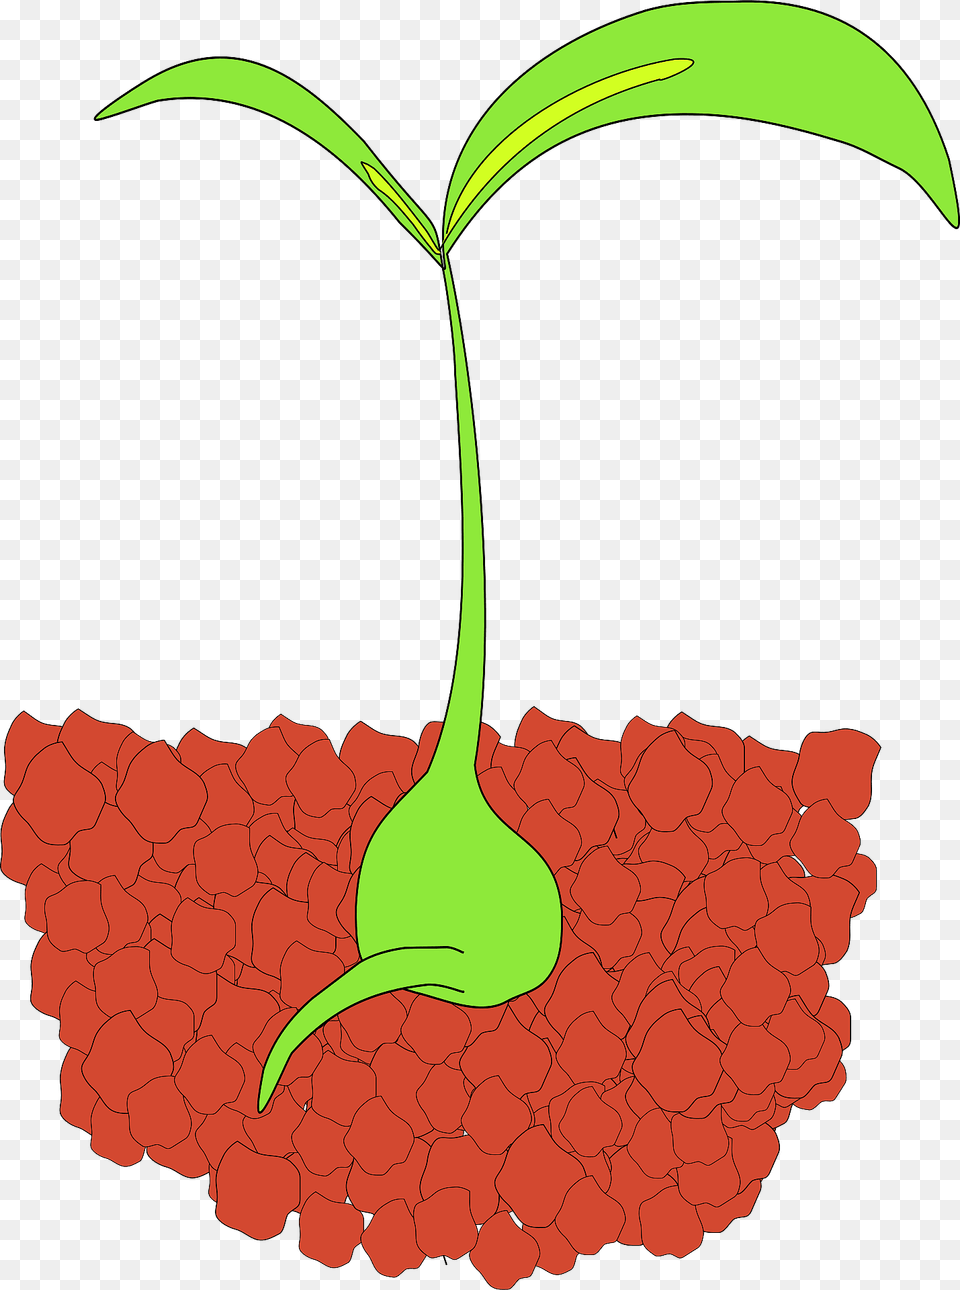 Seedling Clipart, Leaf, Plant, Food, Fruit Png Image